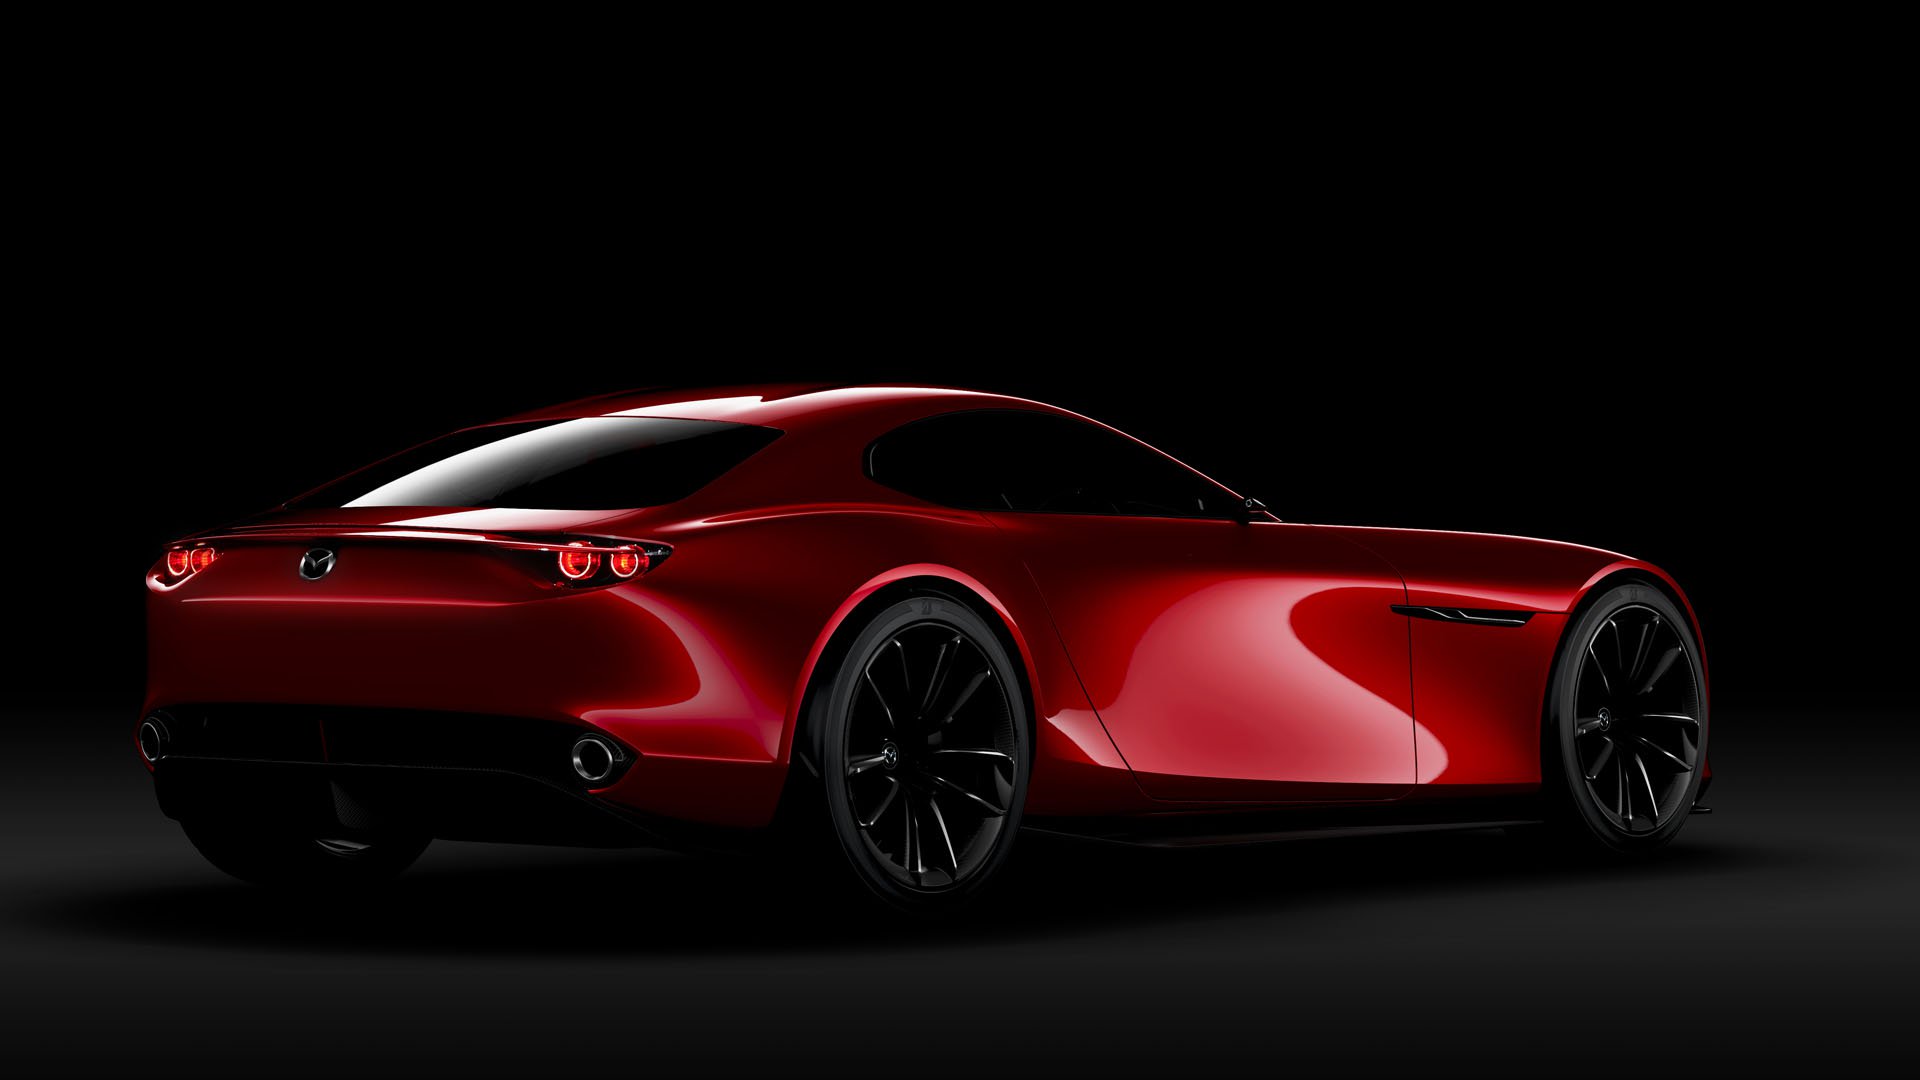 Giấc mơ siêu xe sử dụng động cơ quay của Mazda khó thành hiện thực